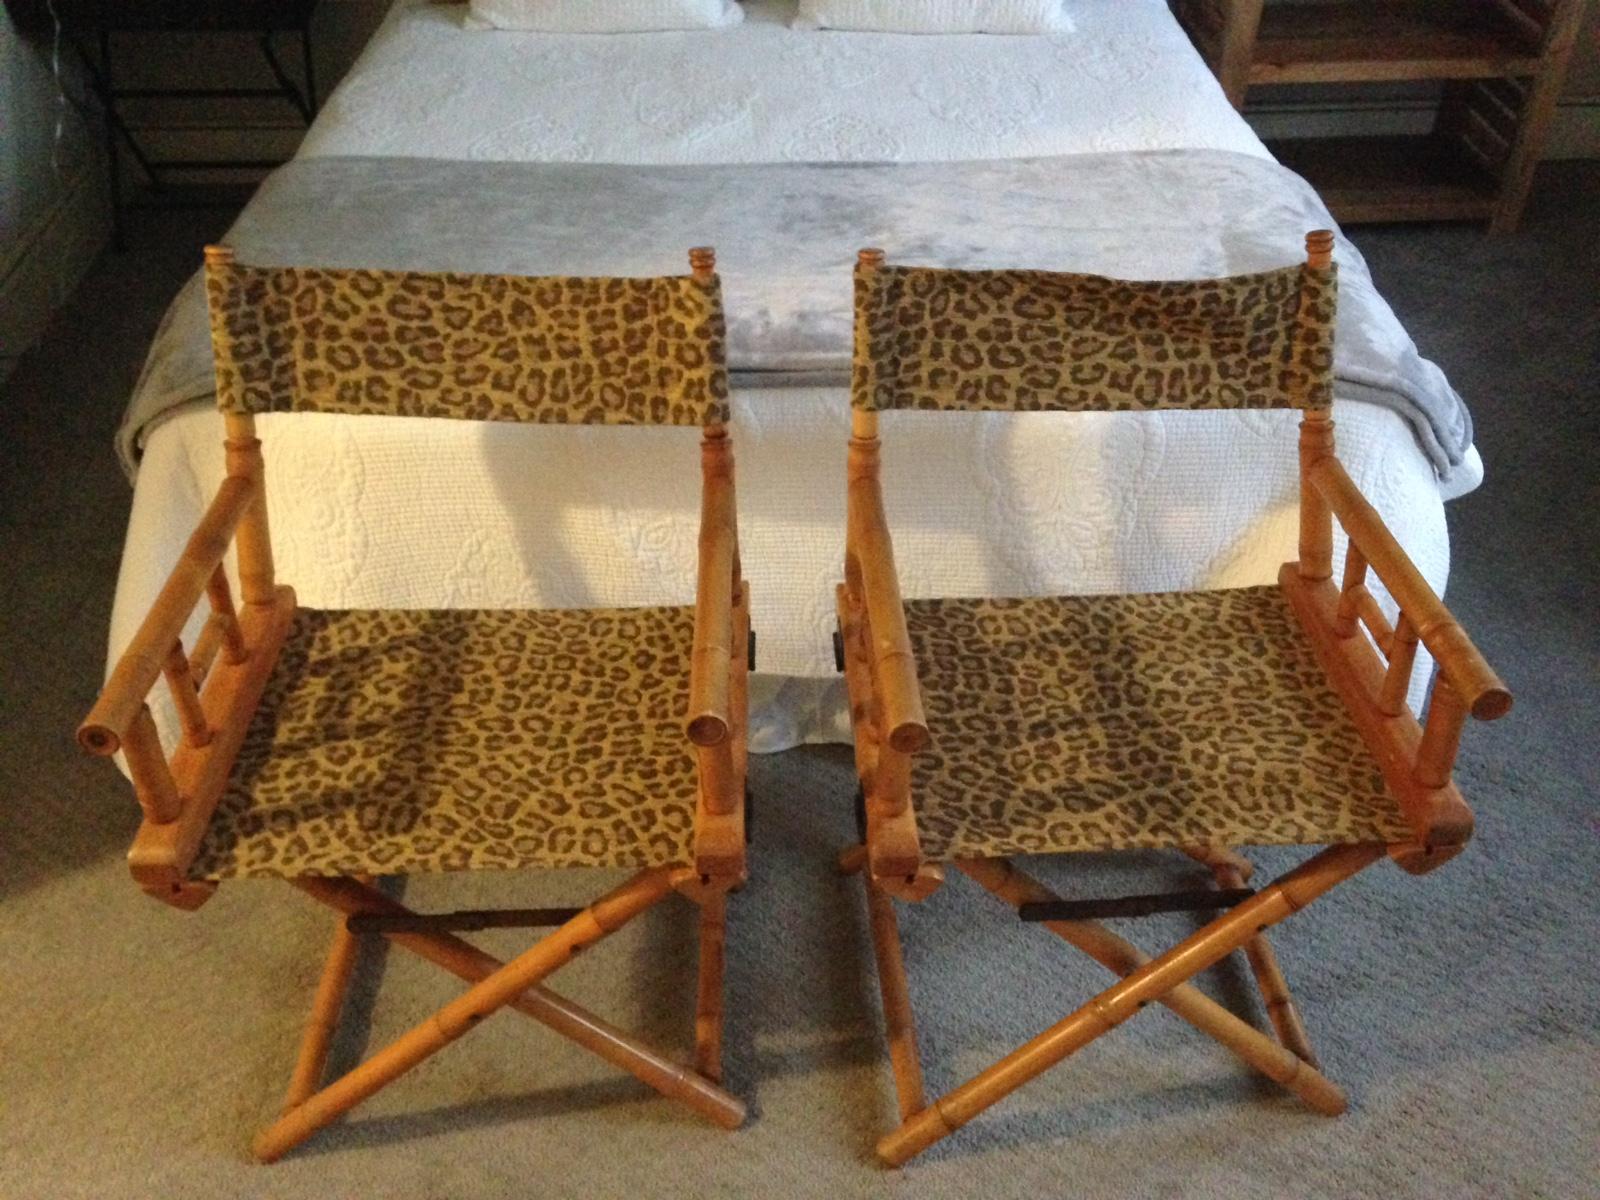 cheetah print camping chair